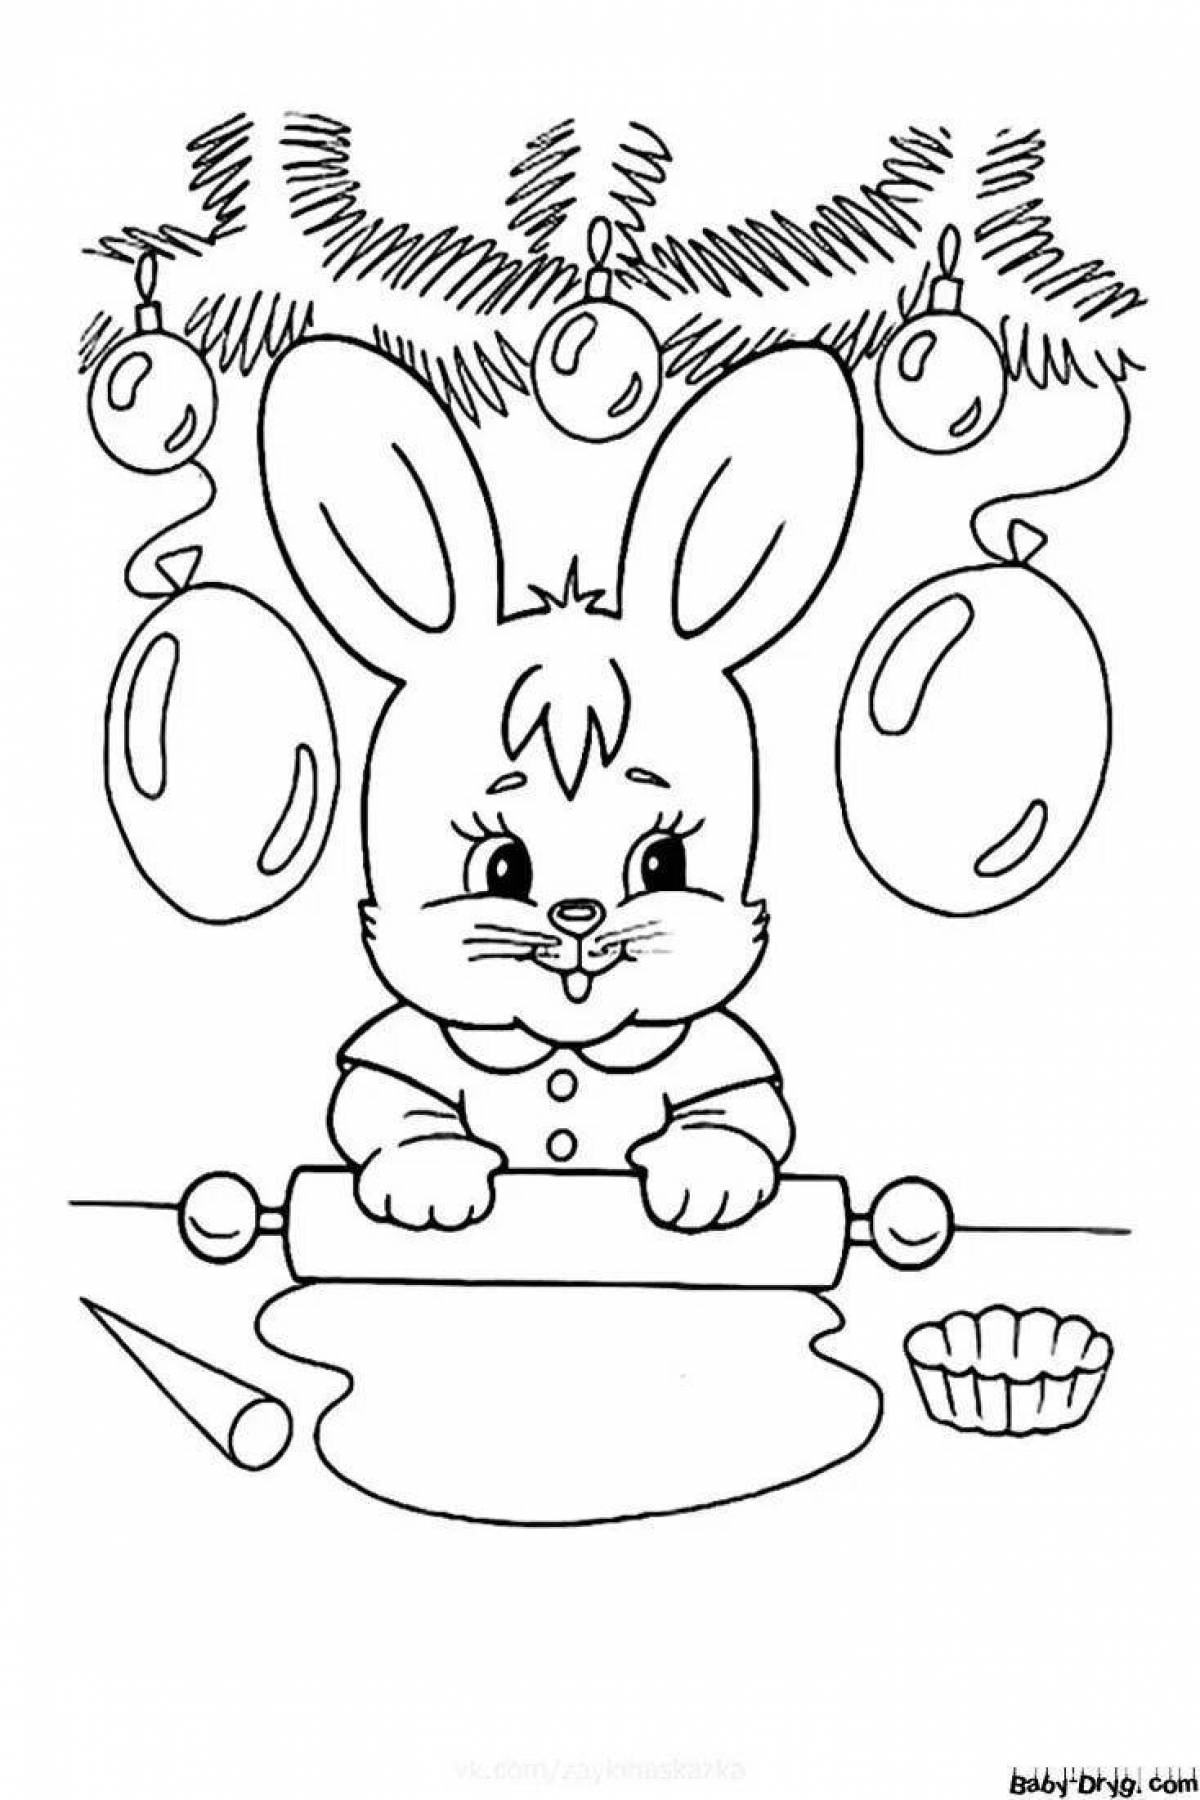 Fun coloring bunny new year